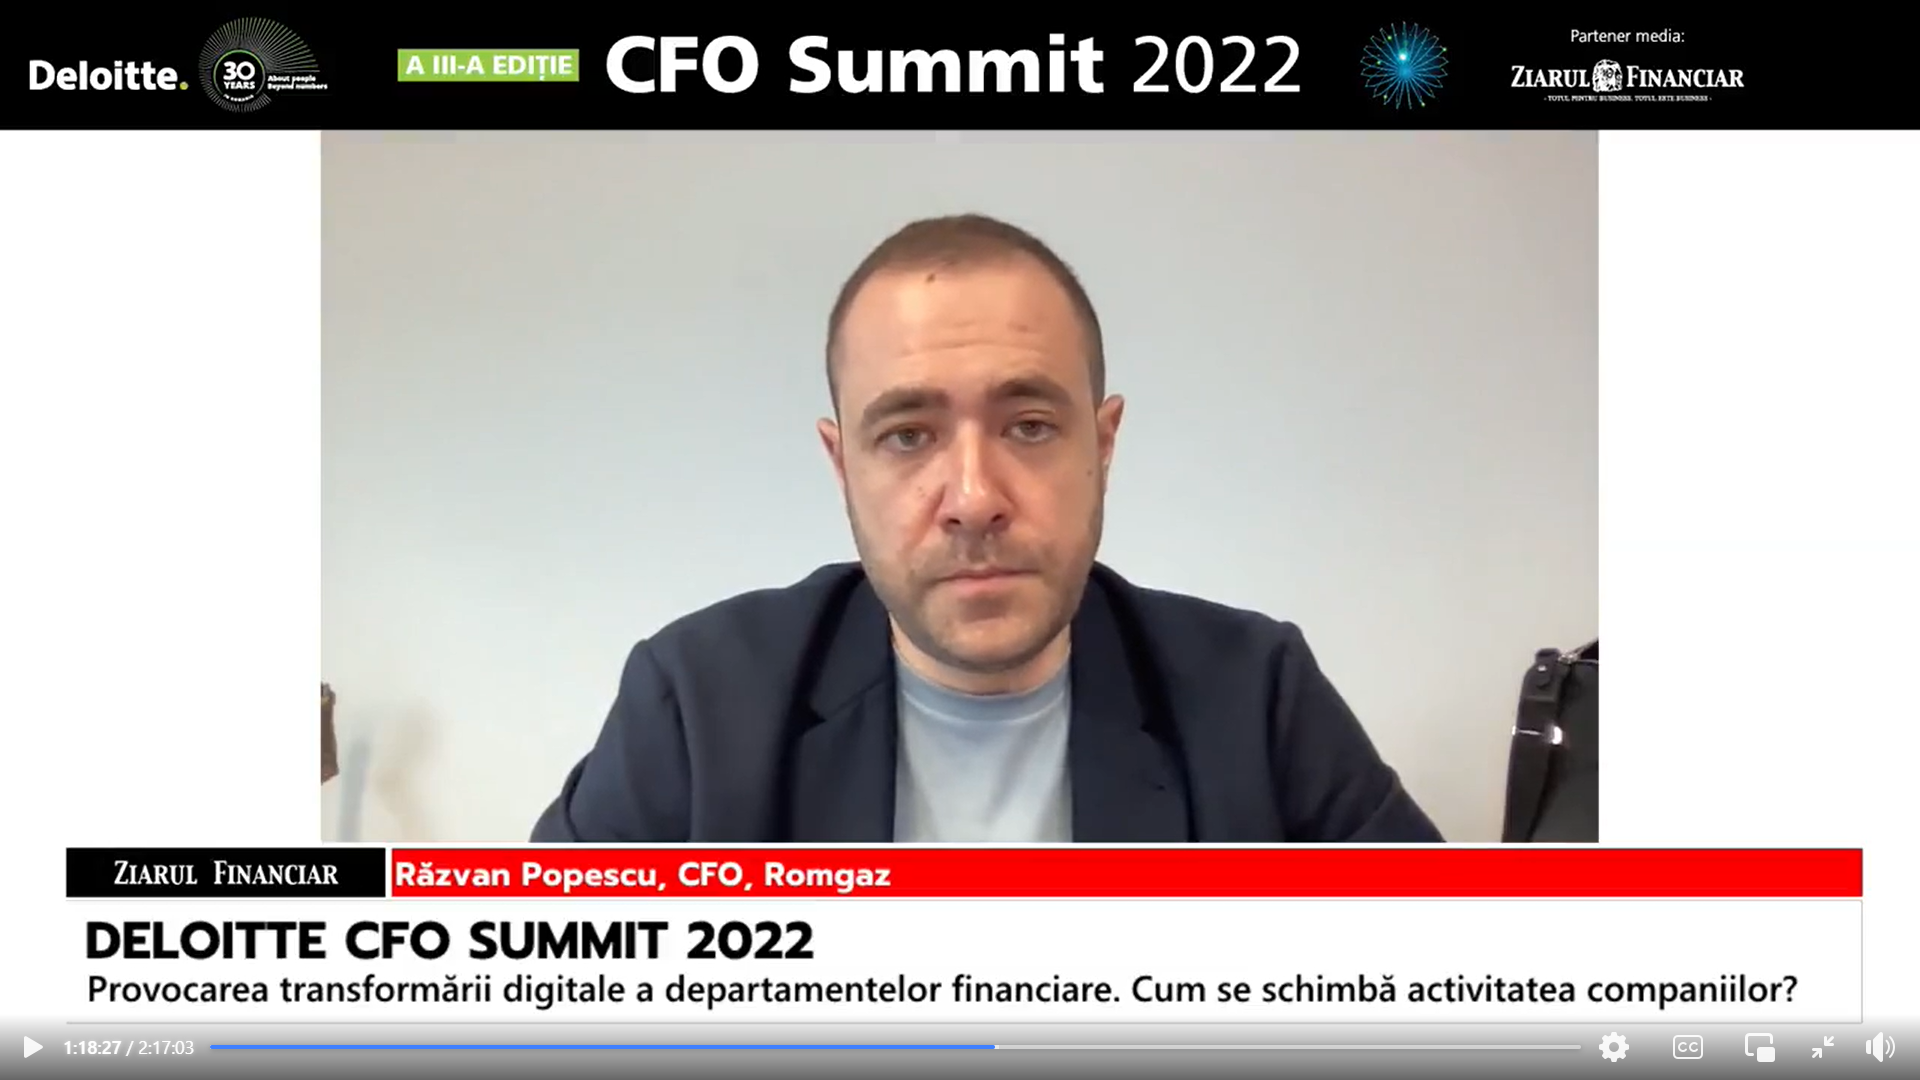 Răzvan Popescu, CFO, Romgaz: Nu cred că Romgaz este în urmă la capitolul digitalizare. În ultimul an mai ales am avut un proces de digitalizare care a funcţionat şi care va fi de succes